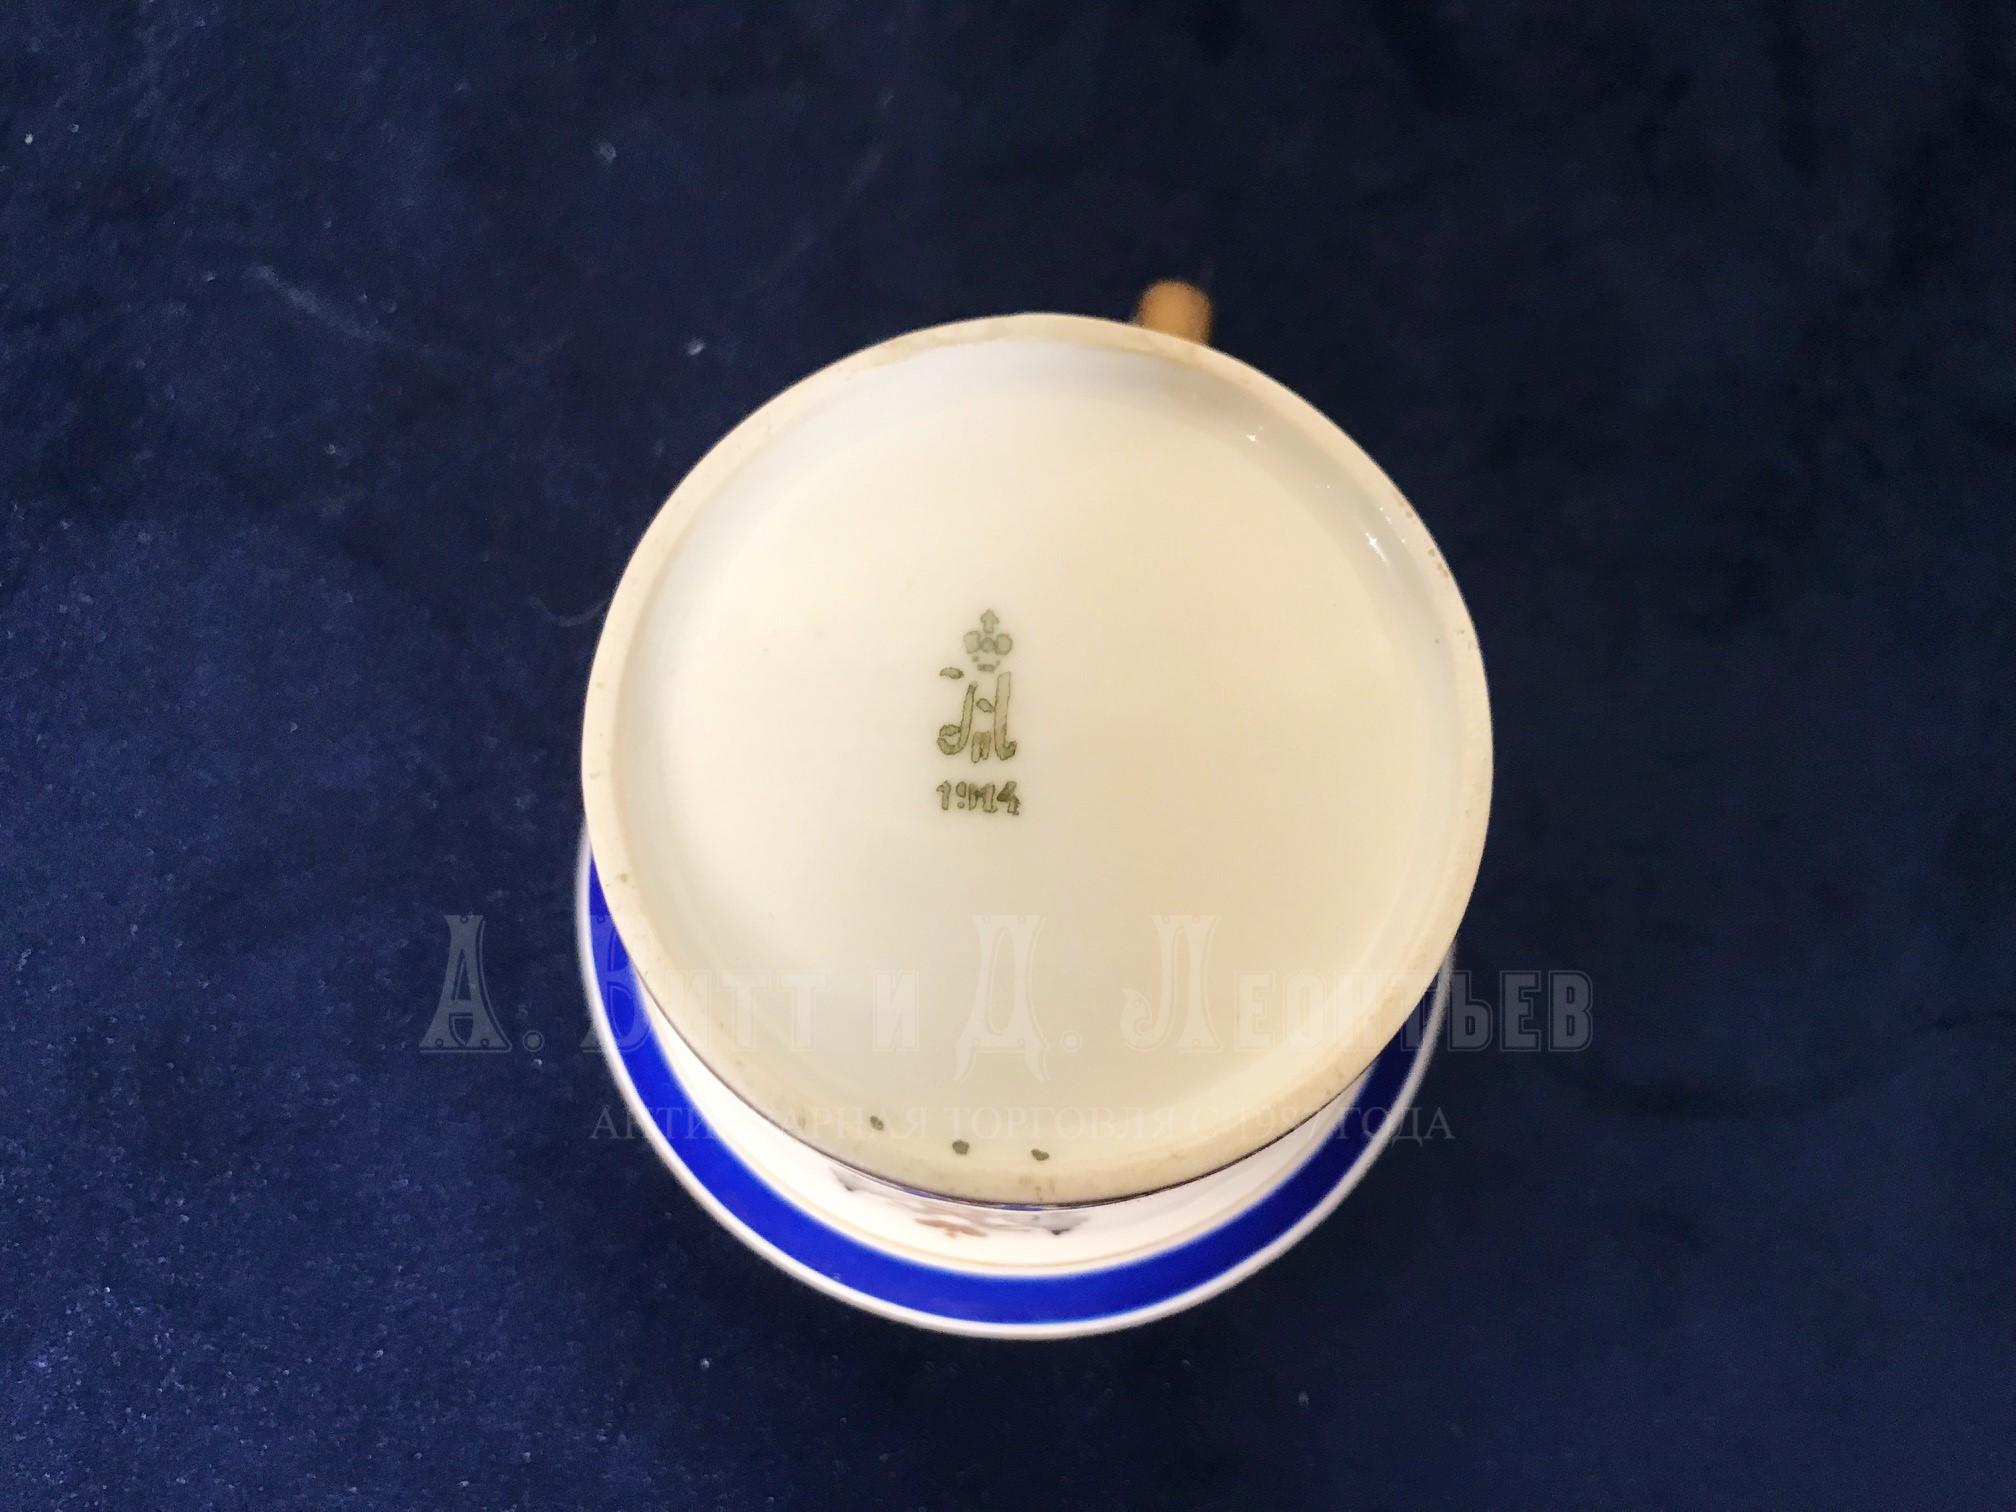 Антикварная чайная пара императорский завод ИФЗ чашка с блюдцем с гербовым орлом